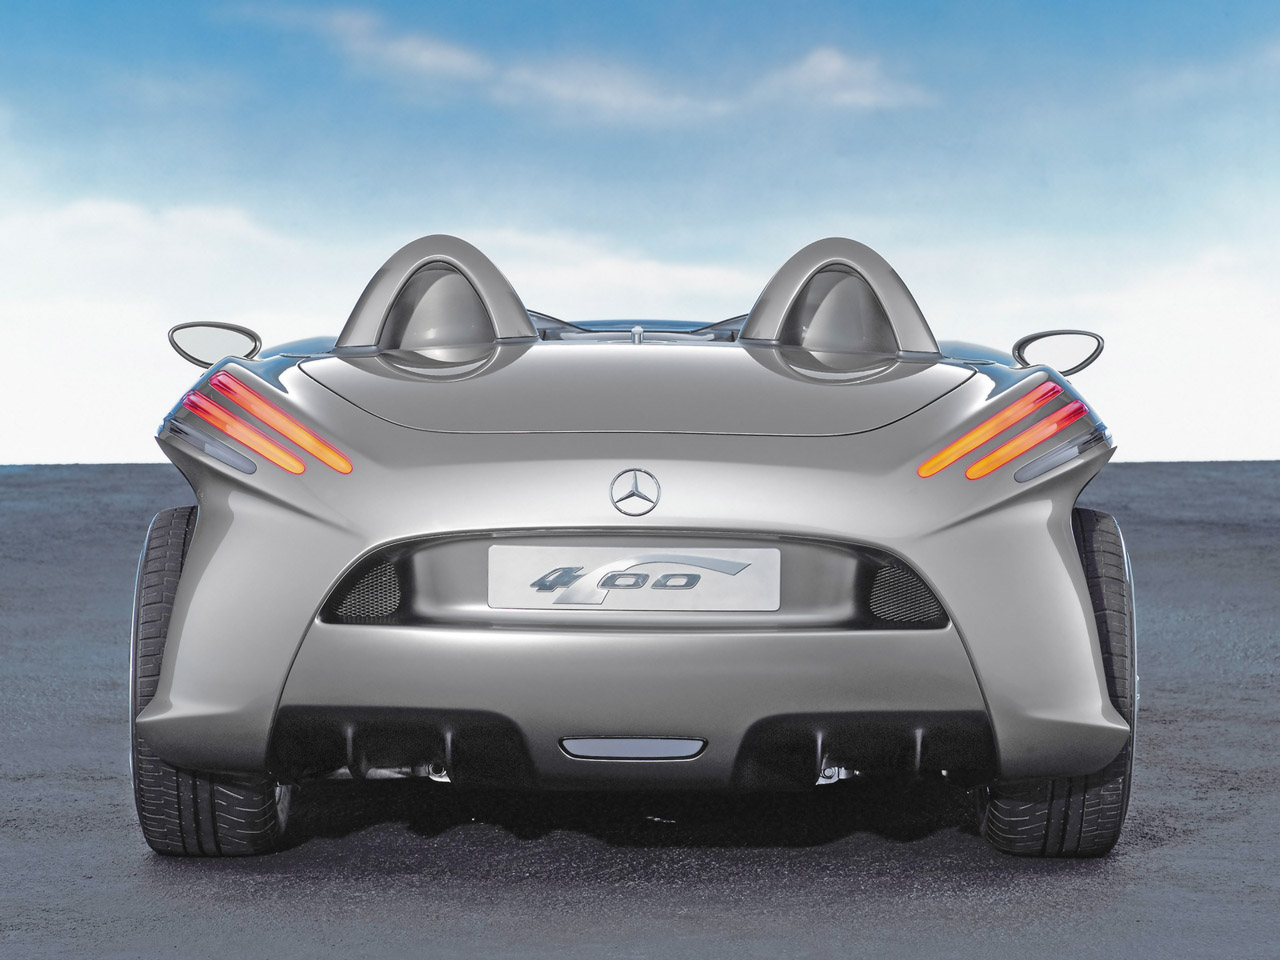 Mercedes-benz F 400 Carving Concept #7